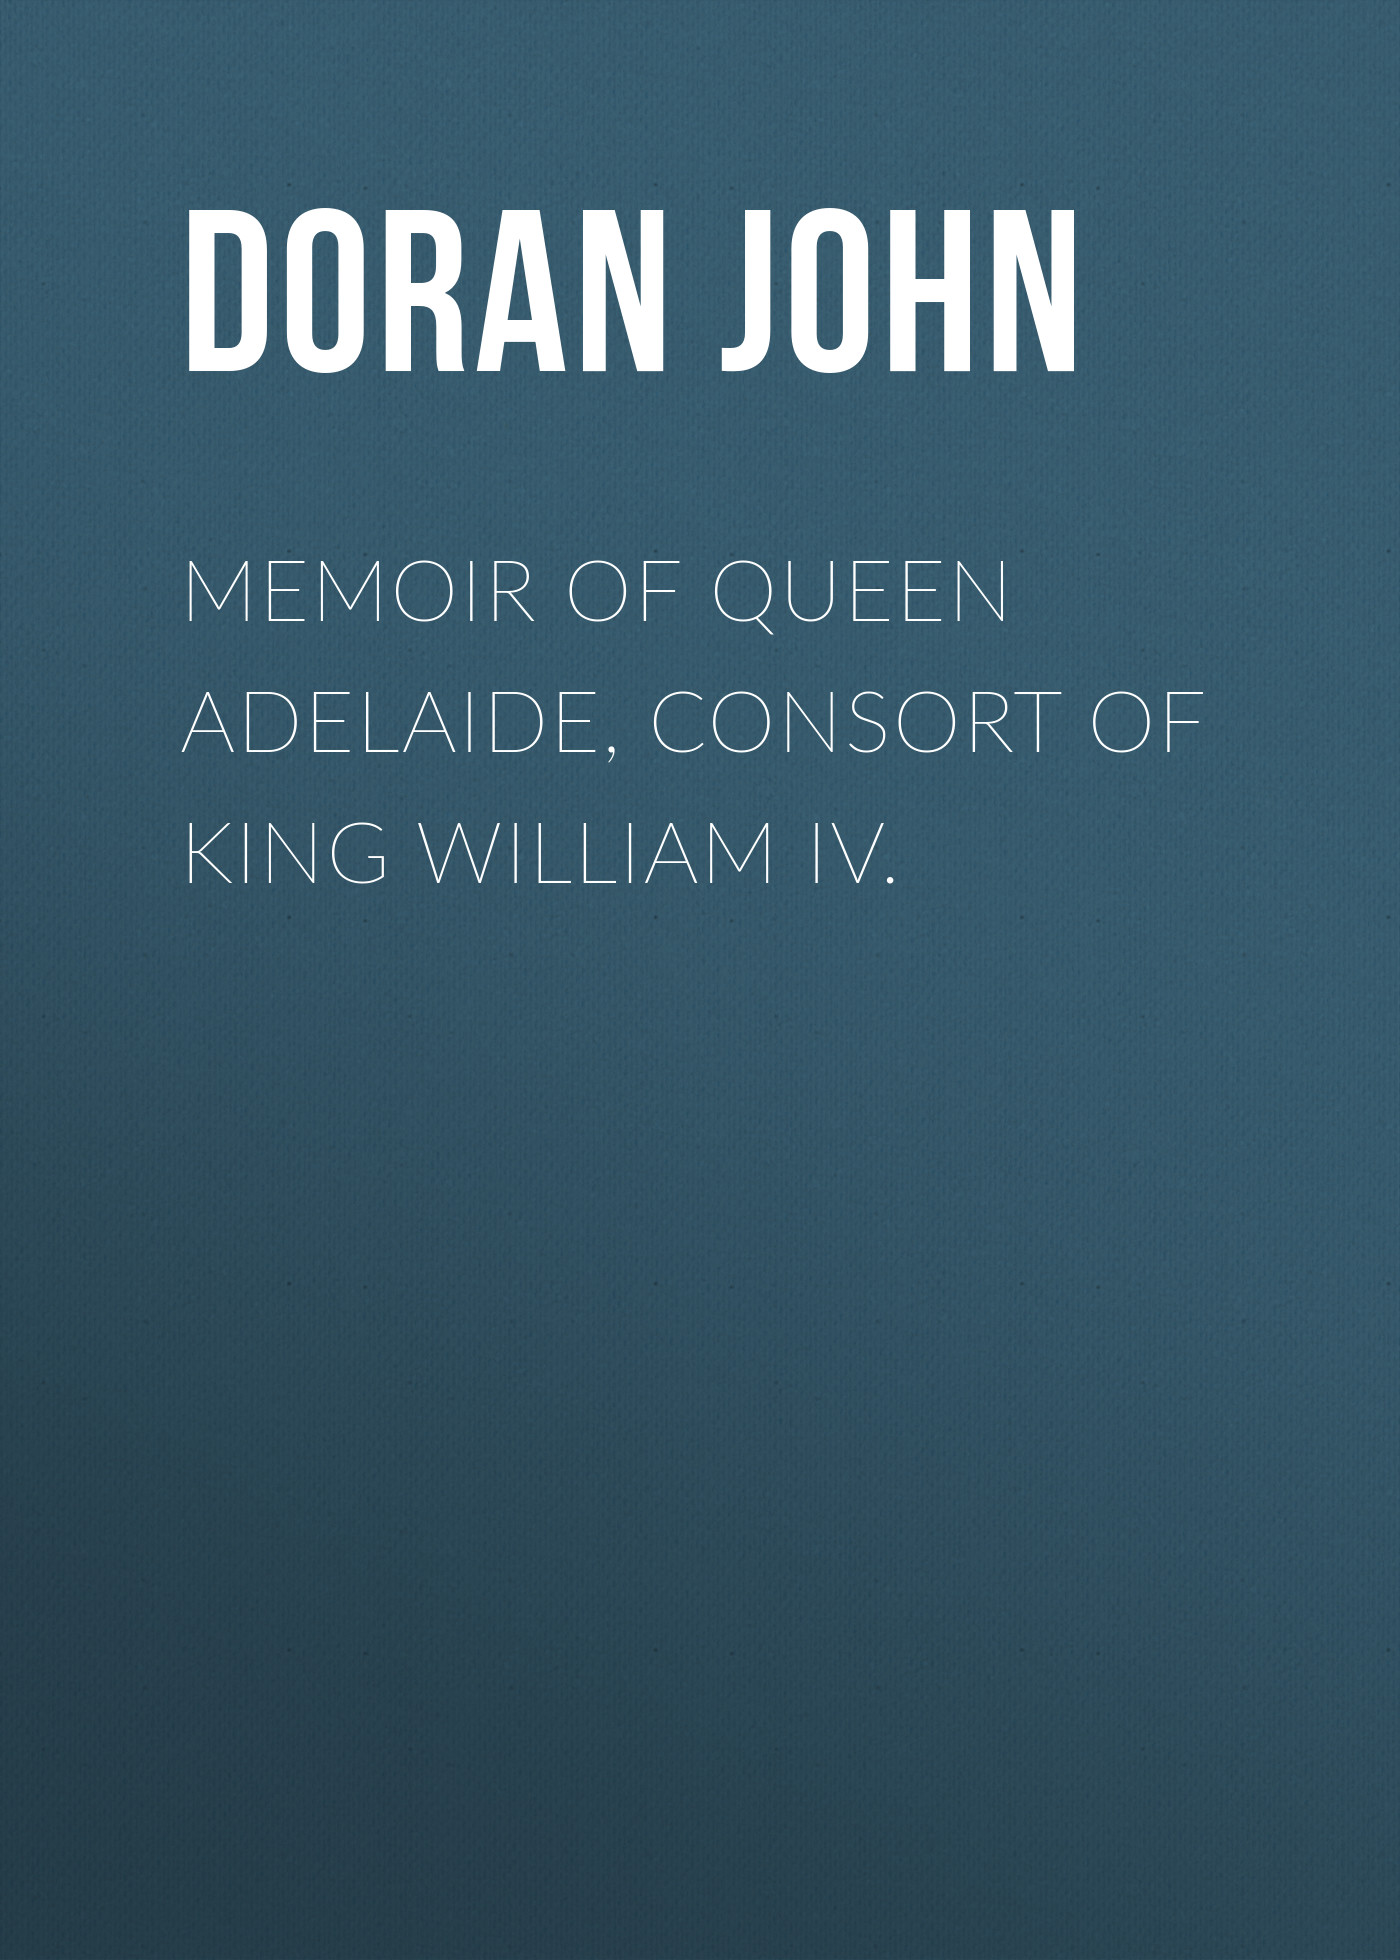 Книга Memoir of Queen Adelaide, Consort of King William IV. из серии , созданная John Doran, может относится к жанру Зарубежная старинная литература, Зарубежная классика. Стоимость электронной книги Memoir of Queen Adelaide, Consort of King William IV. с идентификатором 24619477 составляет 0 руб.